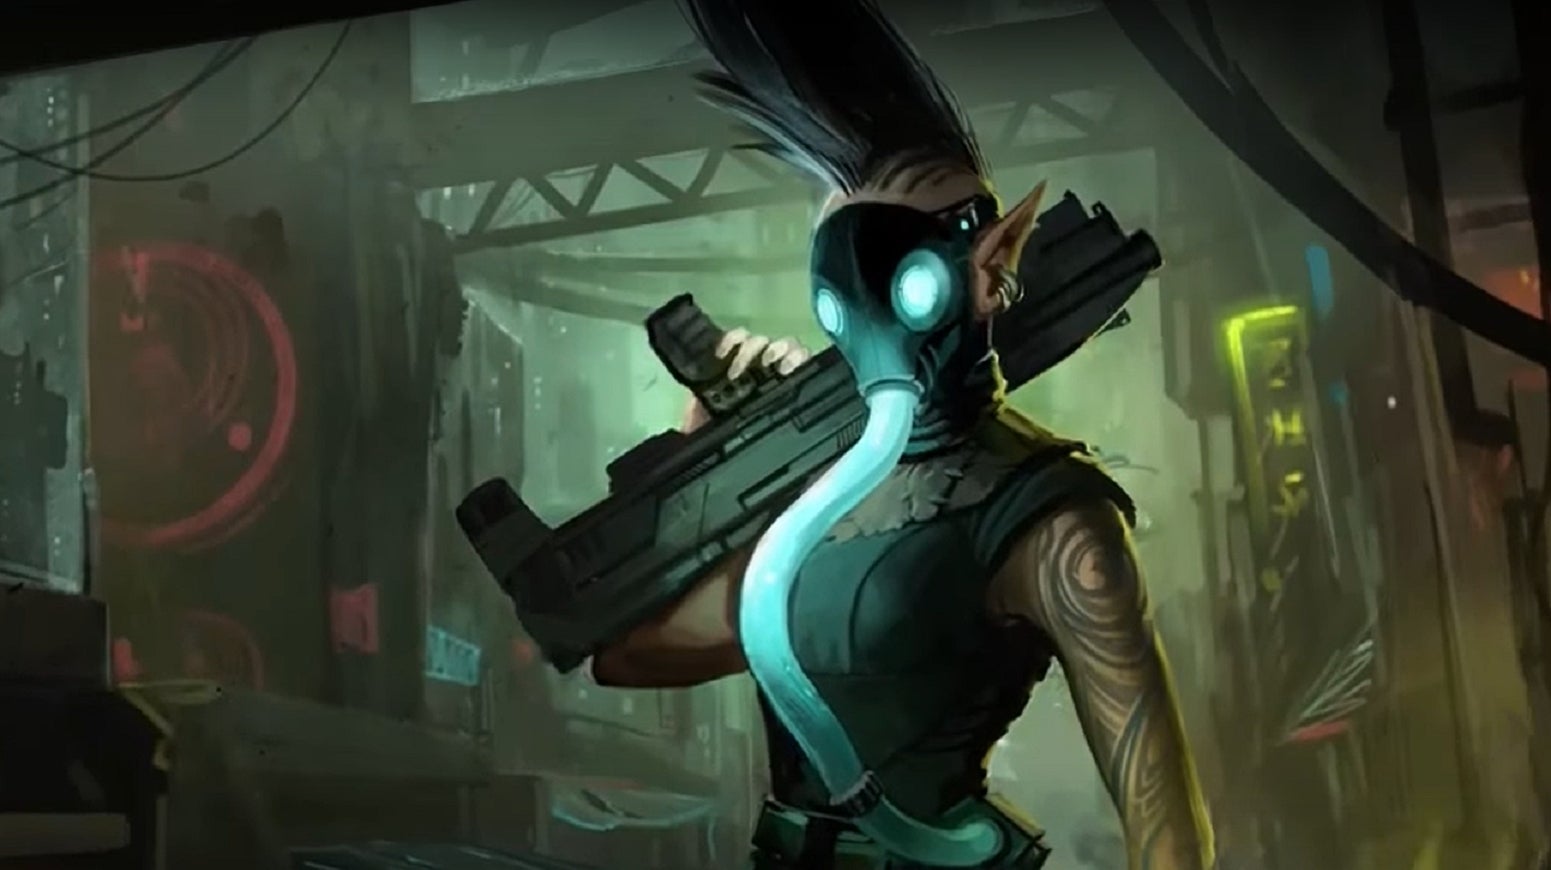 Bilder zu Cyberpunk-Spiele gratis: GOG verschenkt die Shadowrun Trilogy!